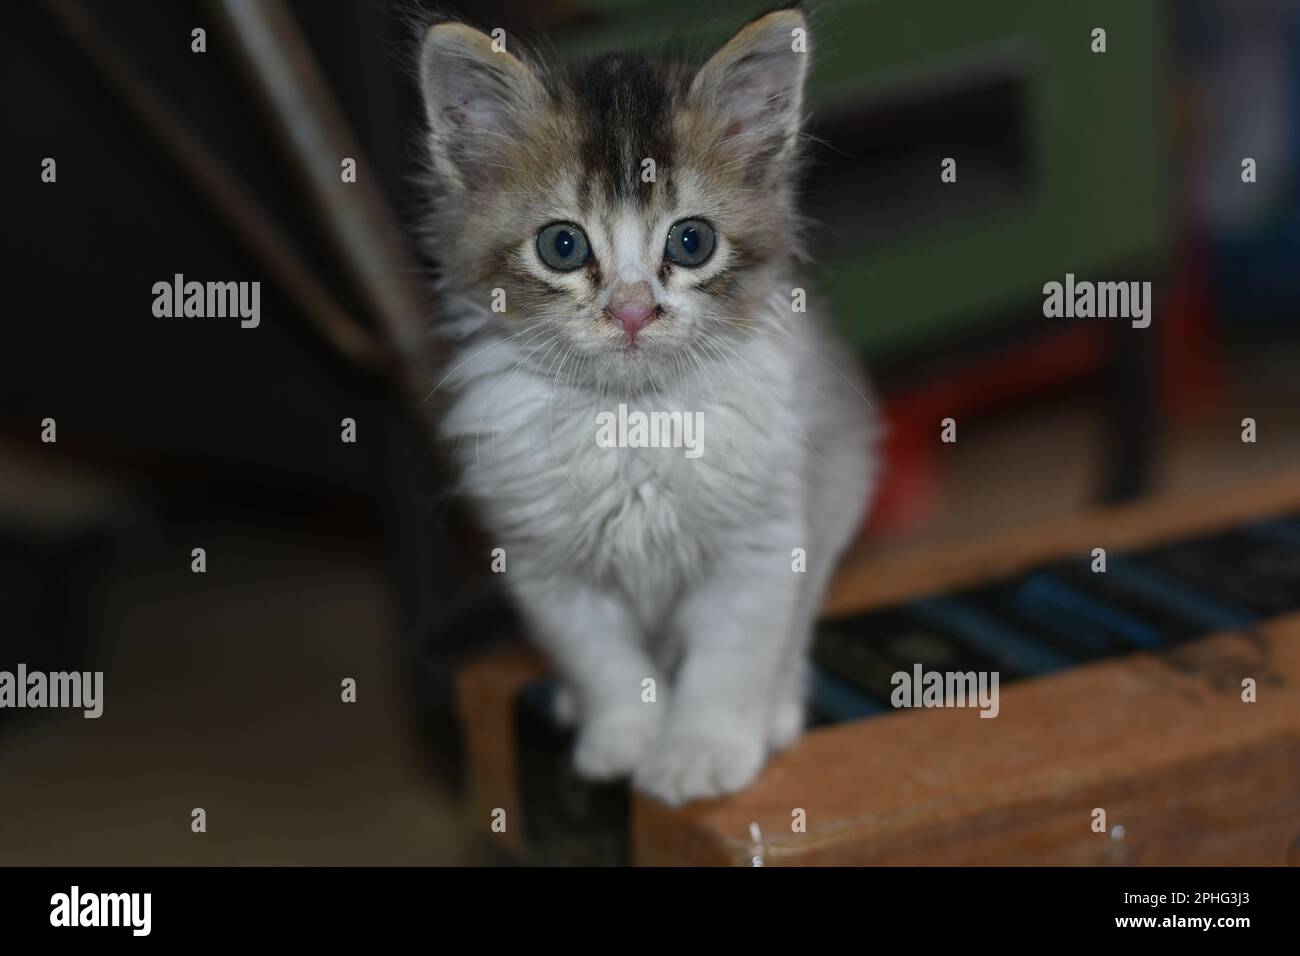 An Indian kitten sitting Stock Photo